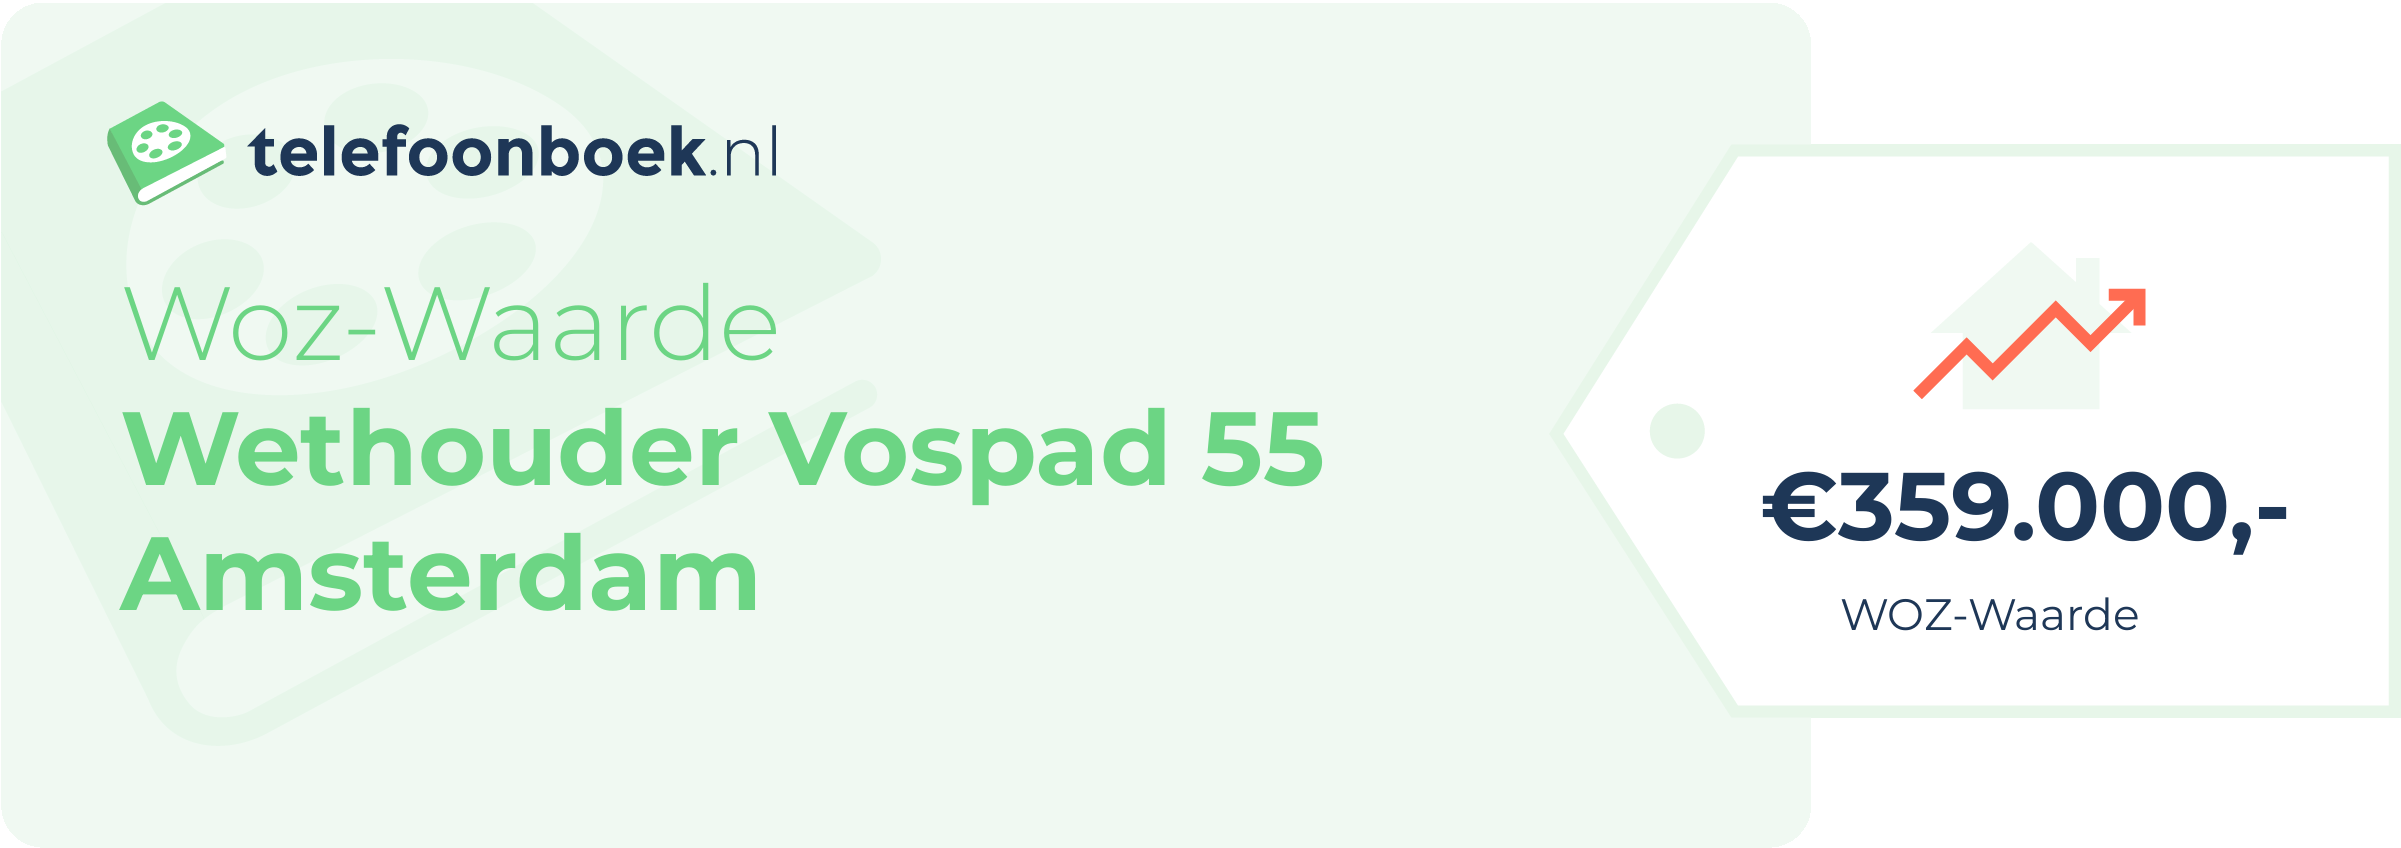 WOZ-waarde Wethouder Vospad 55 Amsterdam